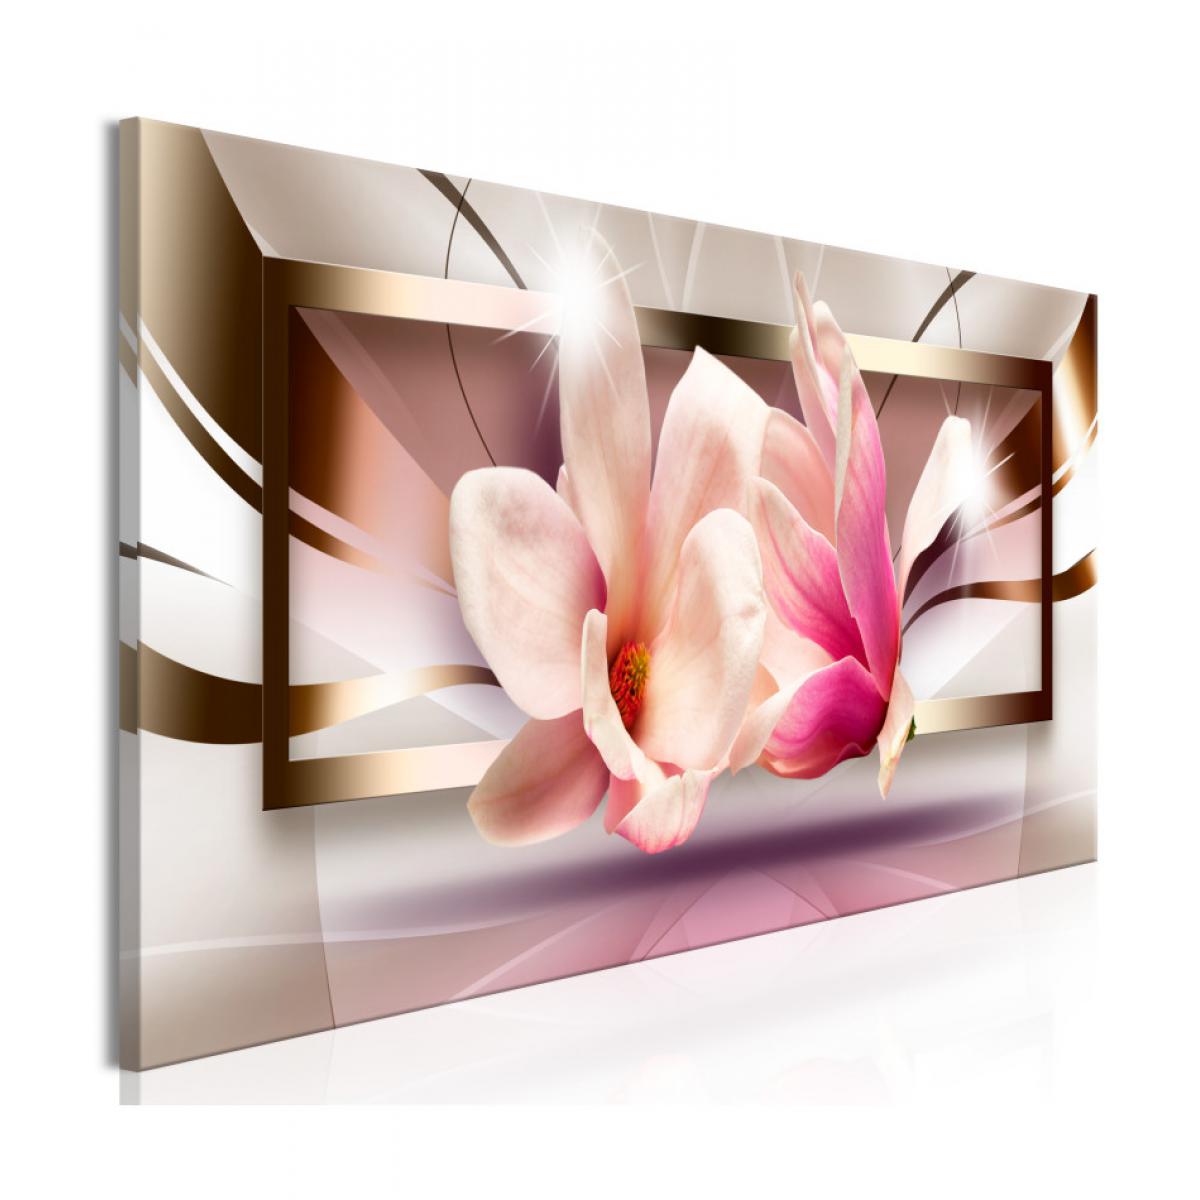 Artgeist - Tableau - Flowers outside the Frame (1 Part) Narrow 150x50 - Tableaux, peintures